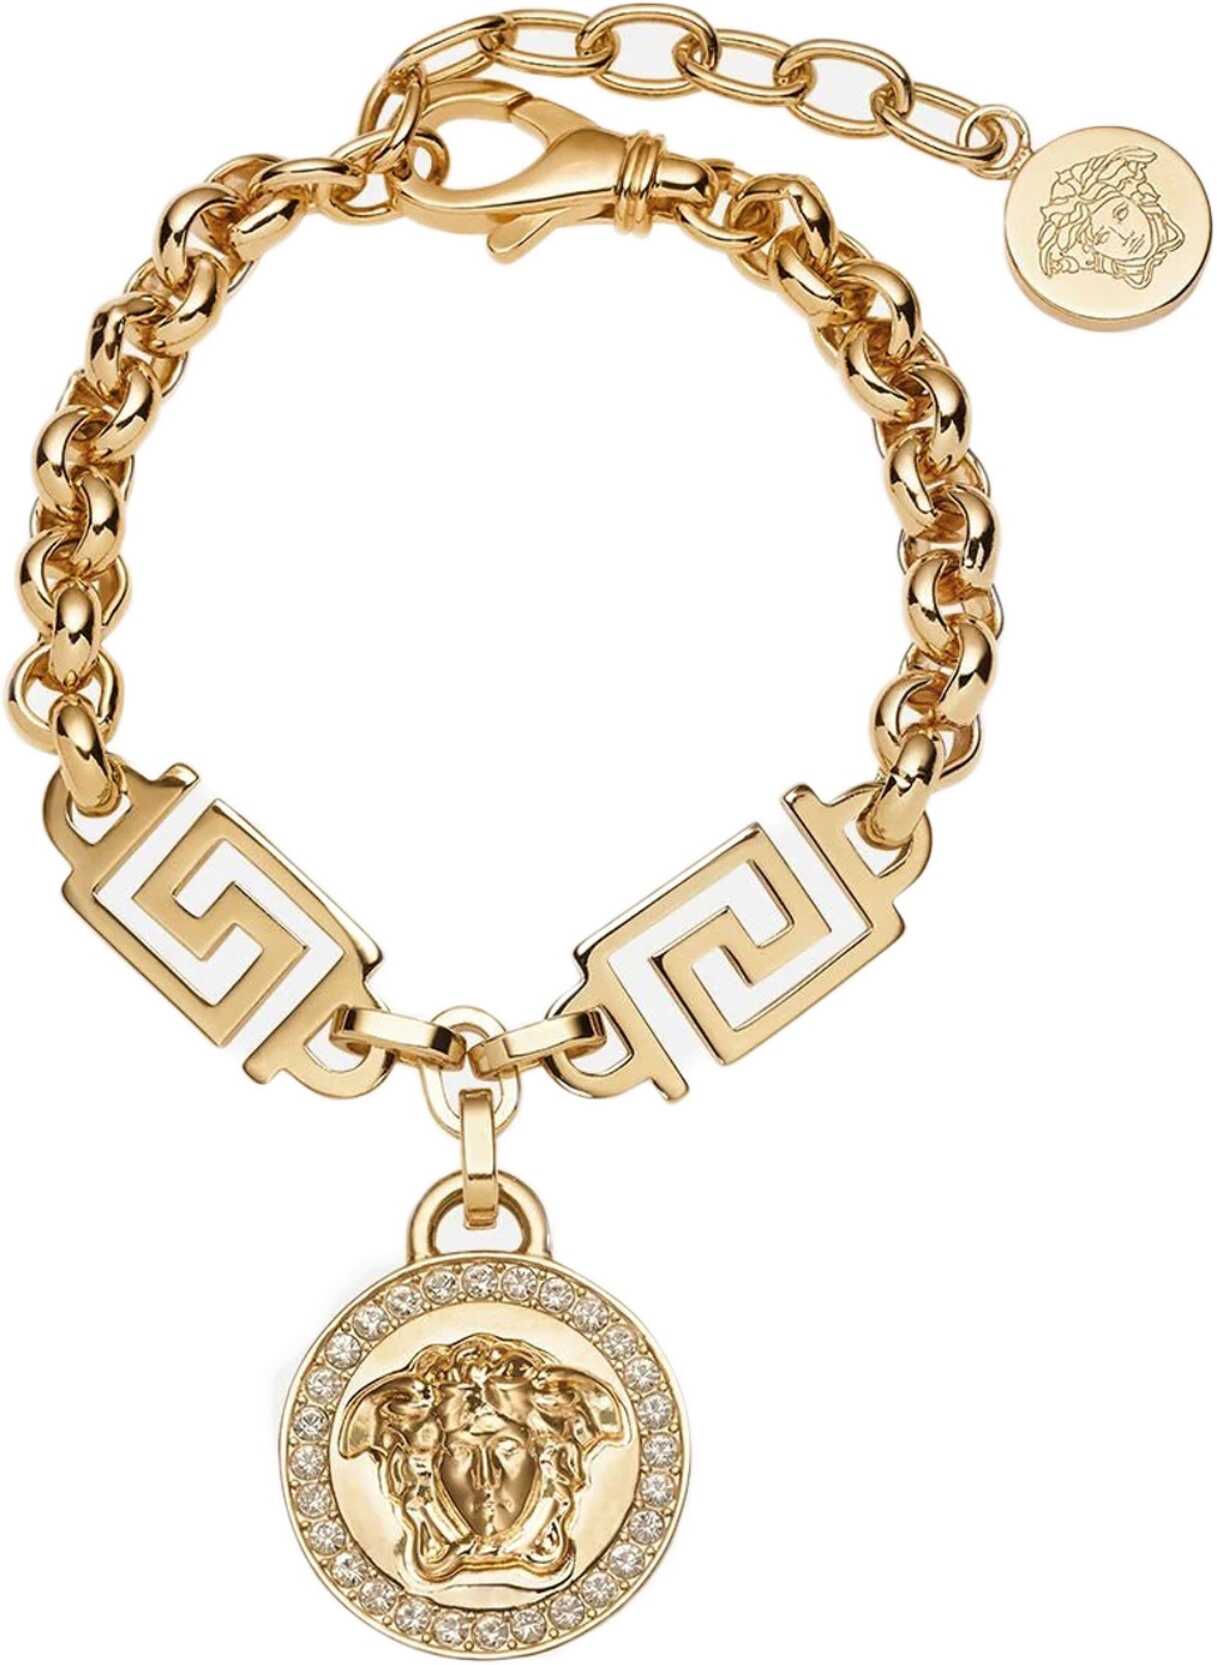 Versace The Greek Medusa Bracelet GOLD image4